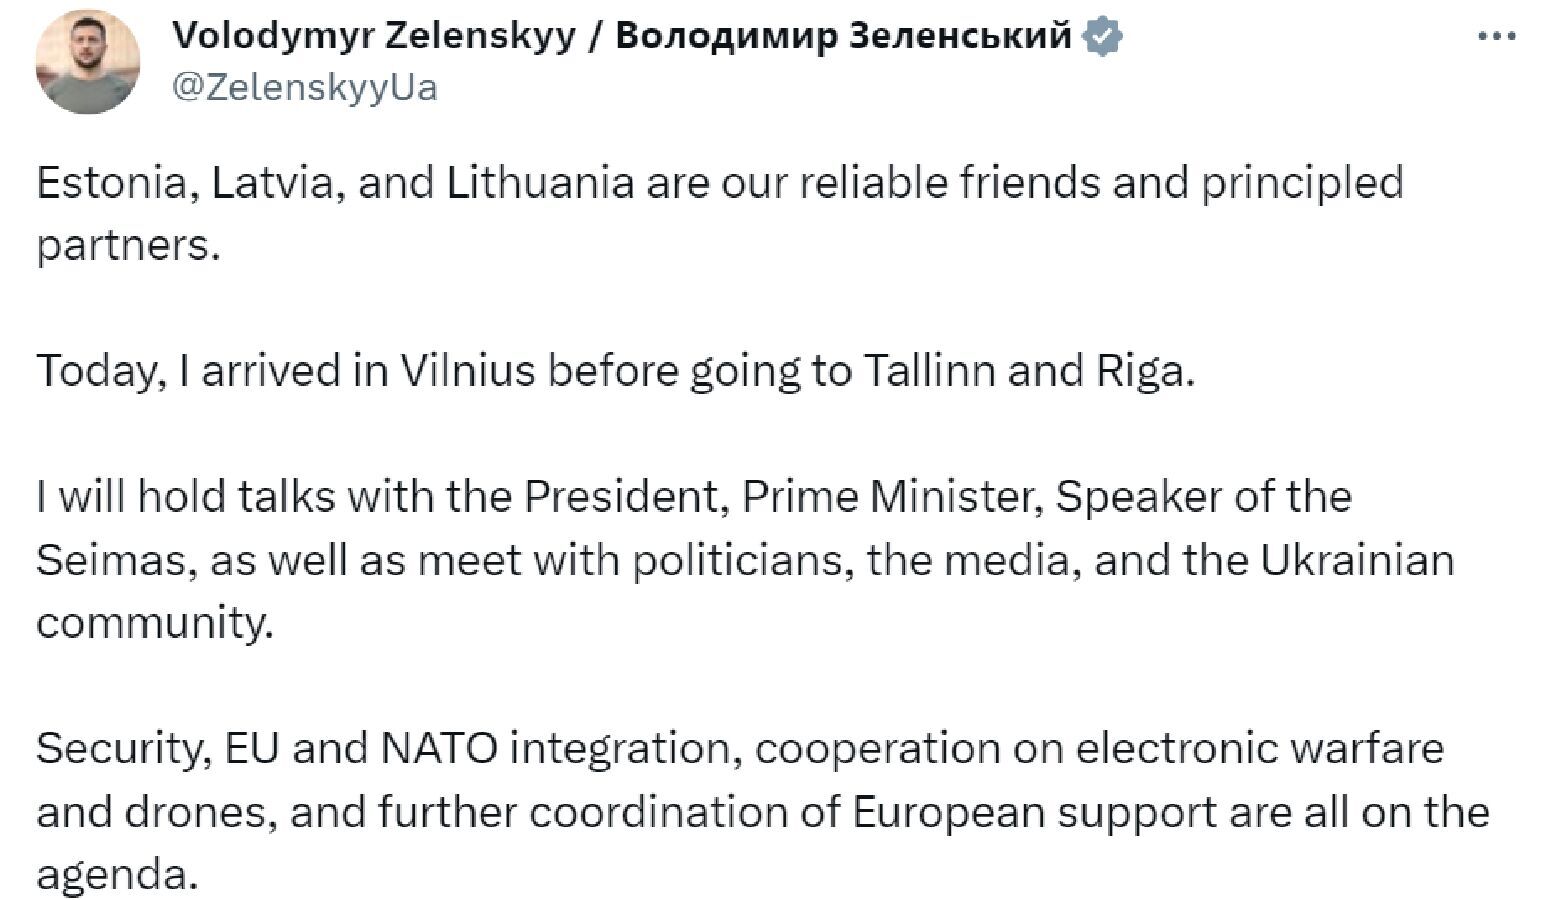 "Украине нужна помощь для победы": президент и премьер Эстонии сделали заявление накануне визита Зеленского